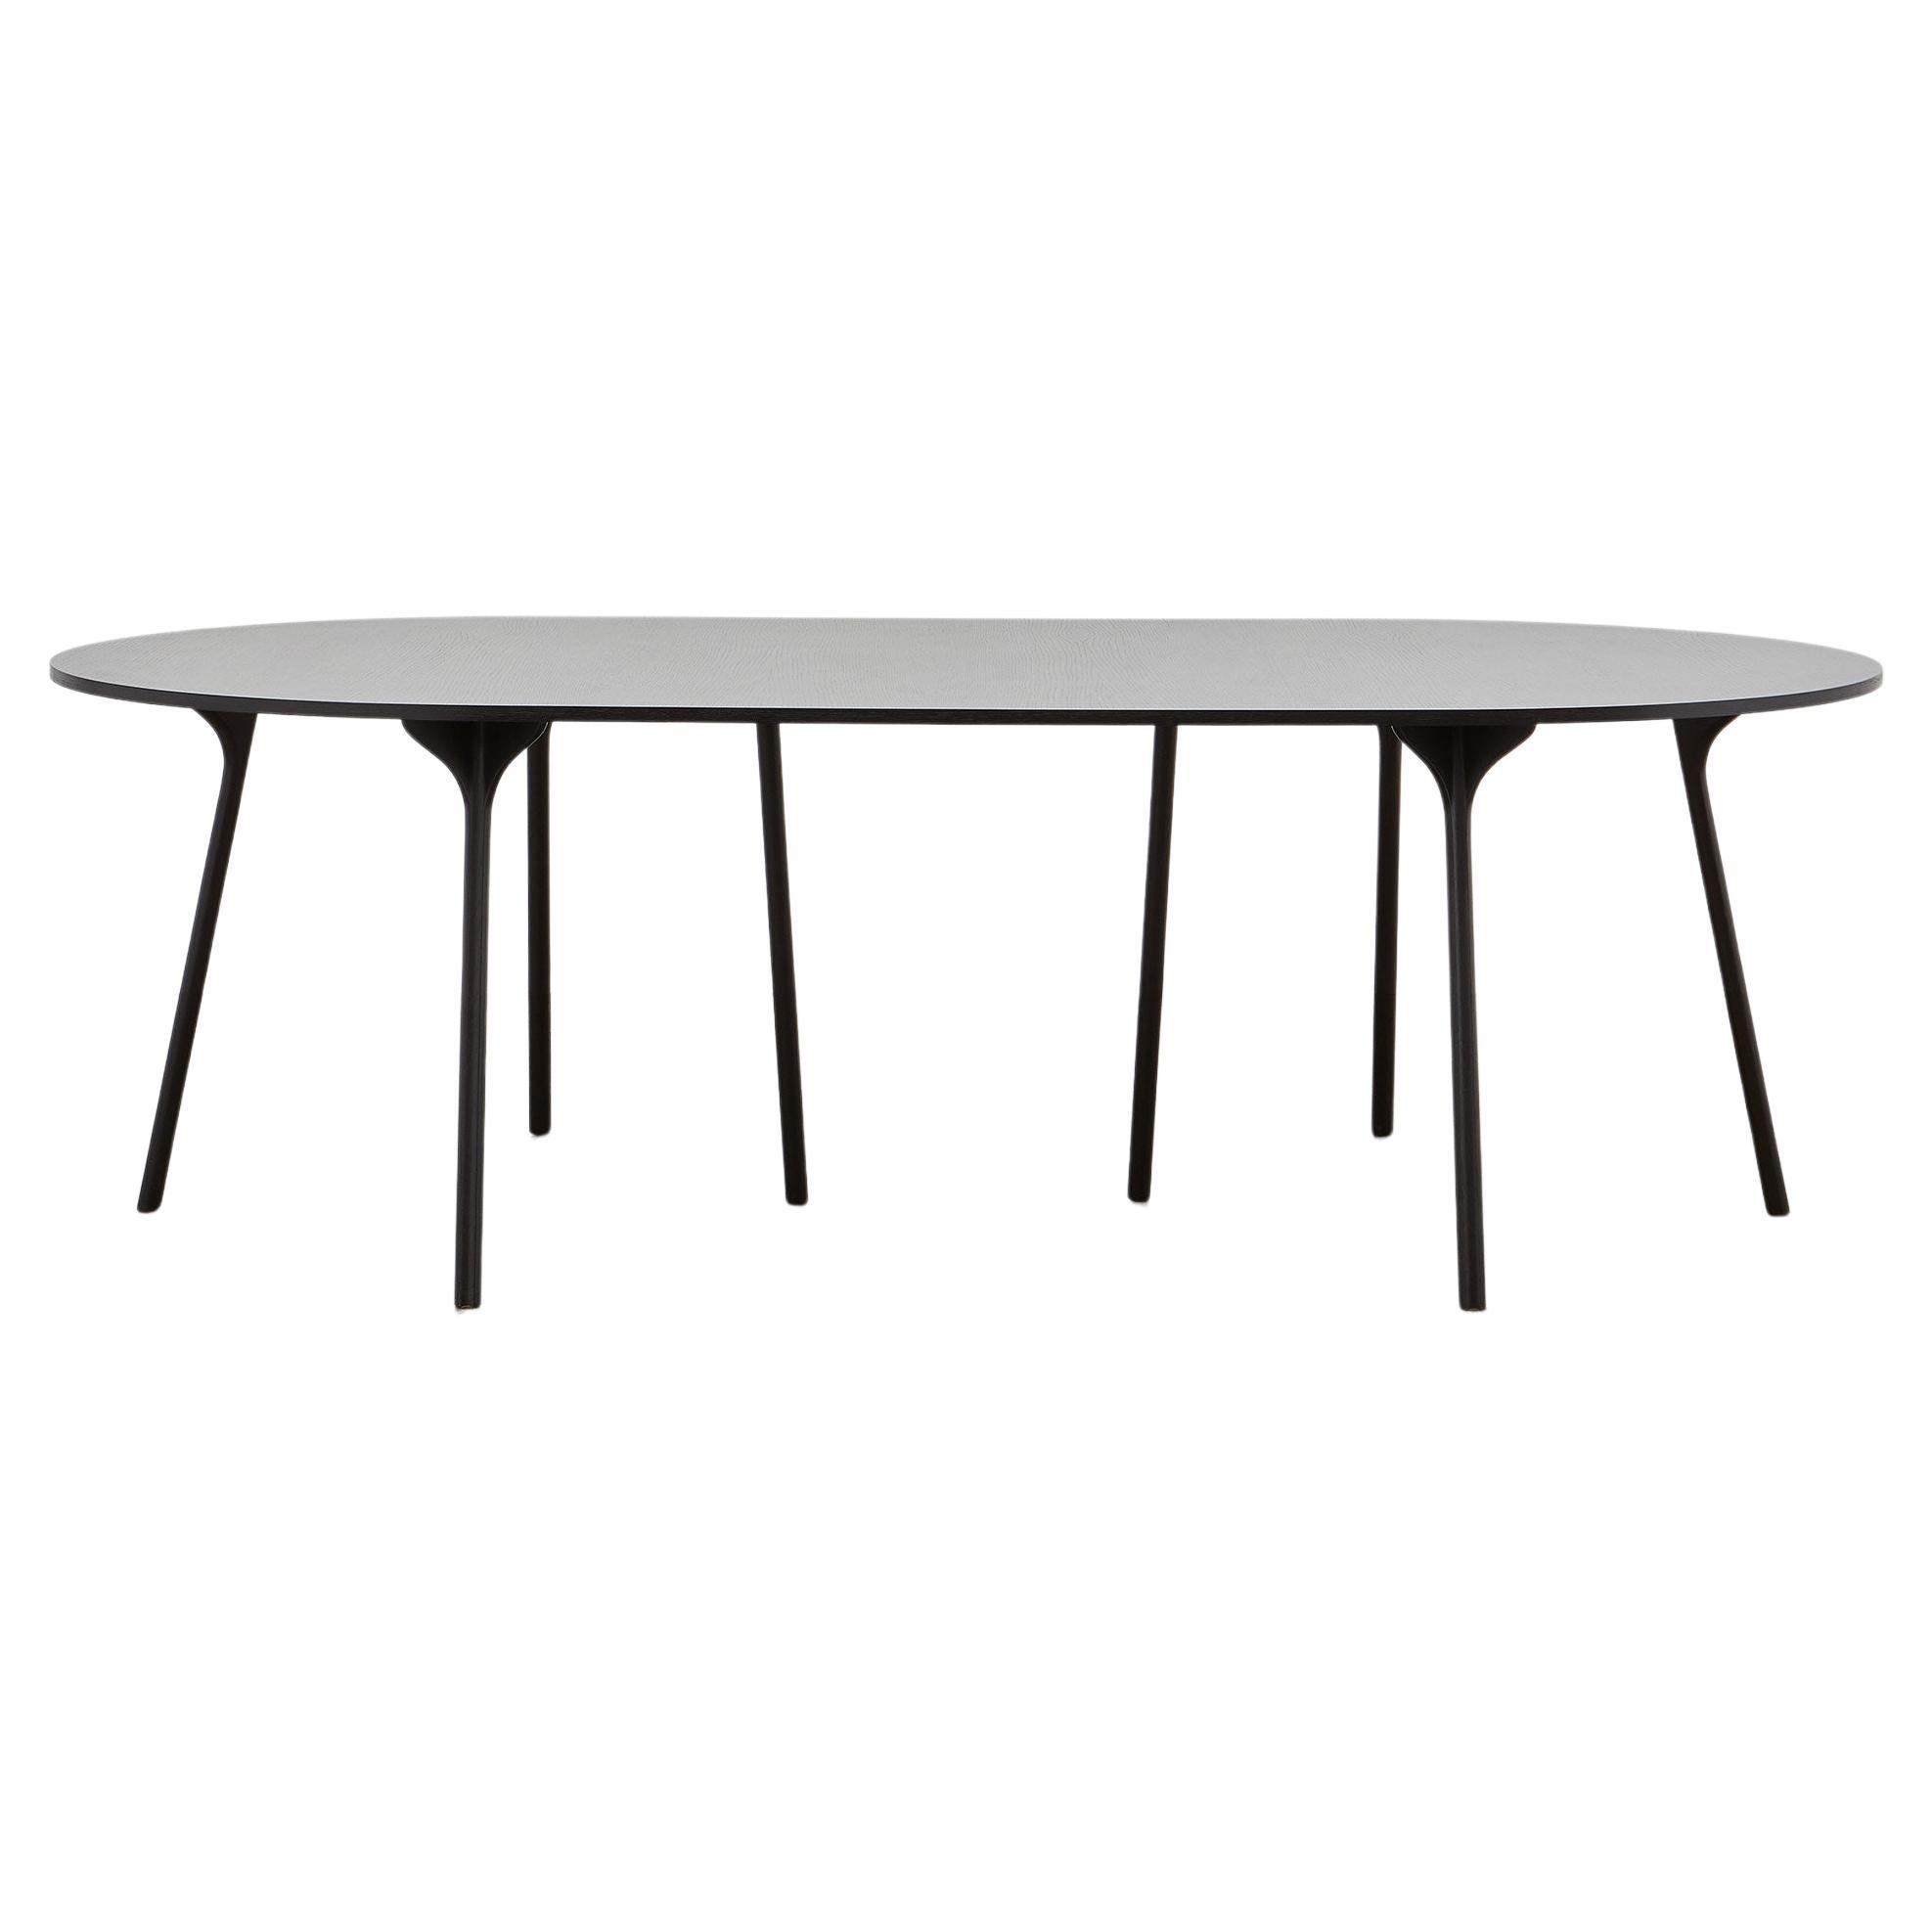 PH Circle Table, Black Oak Wood Legs, Veneer Table Plate and Edge